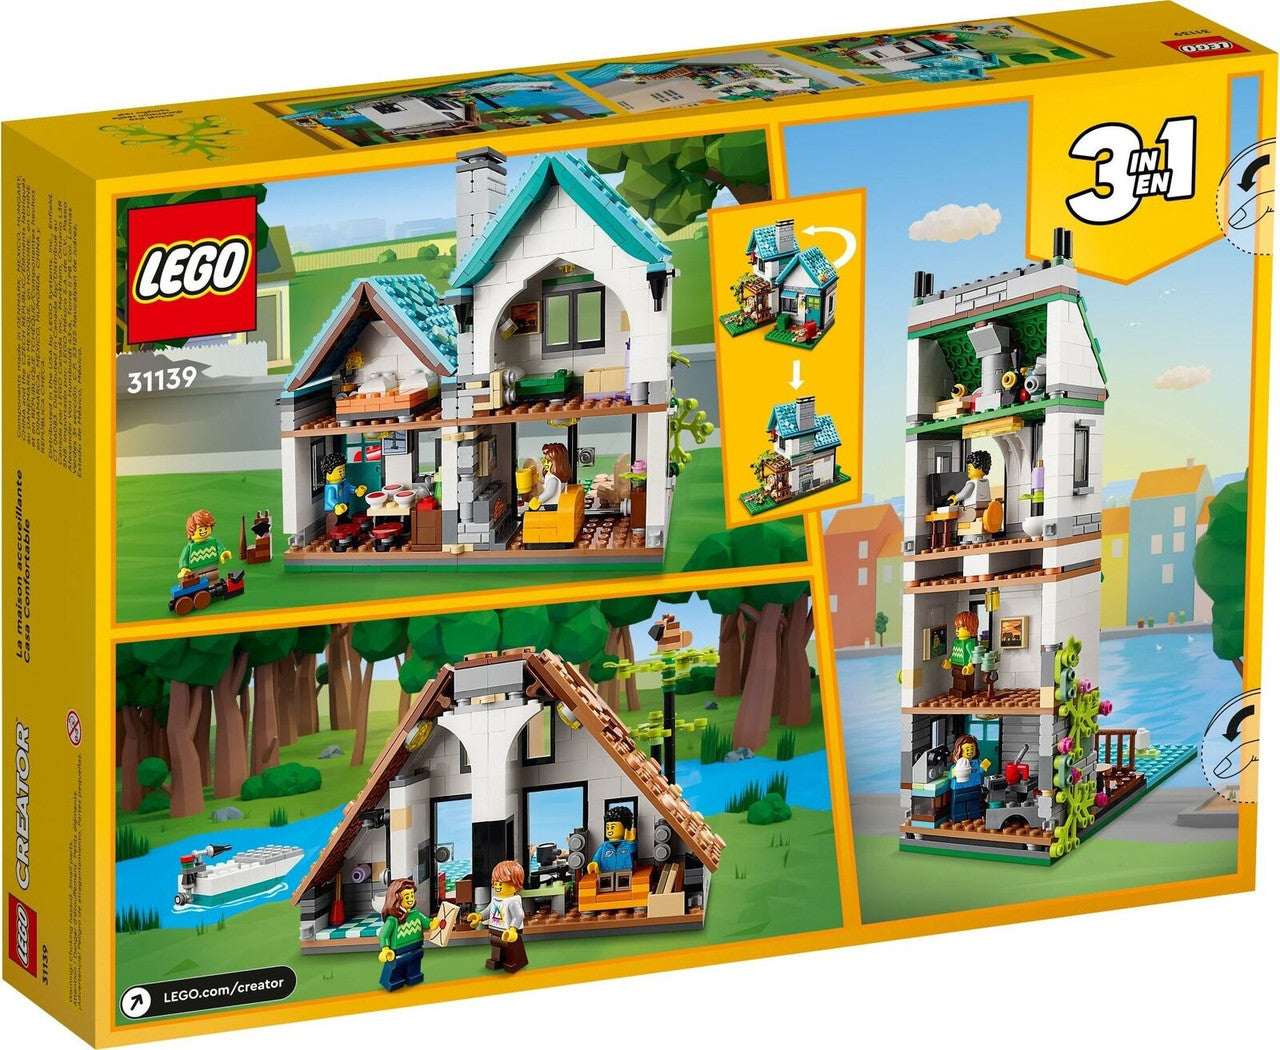 LEGO Creator Cozy House 31139